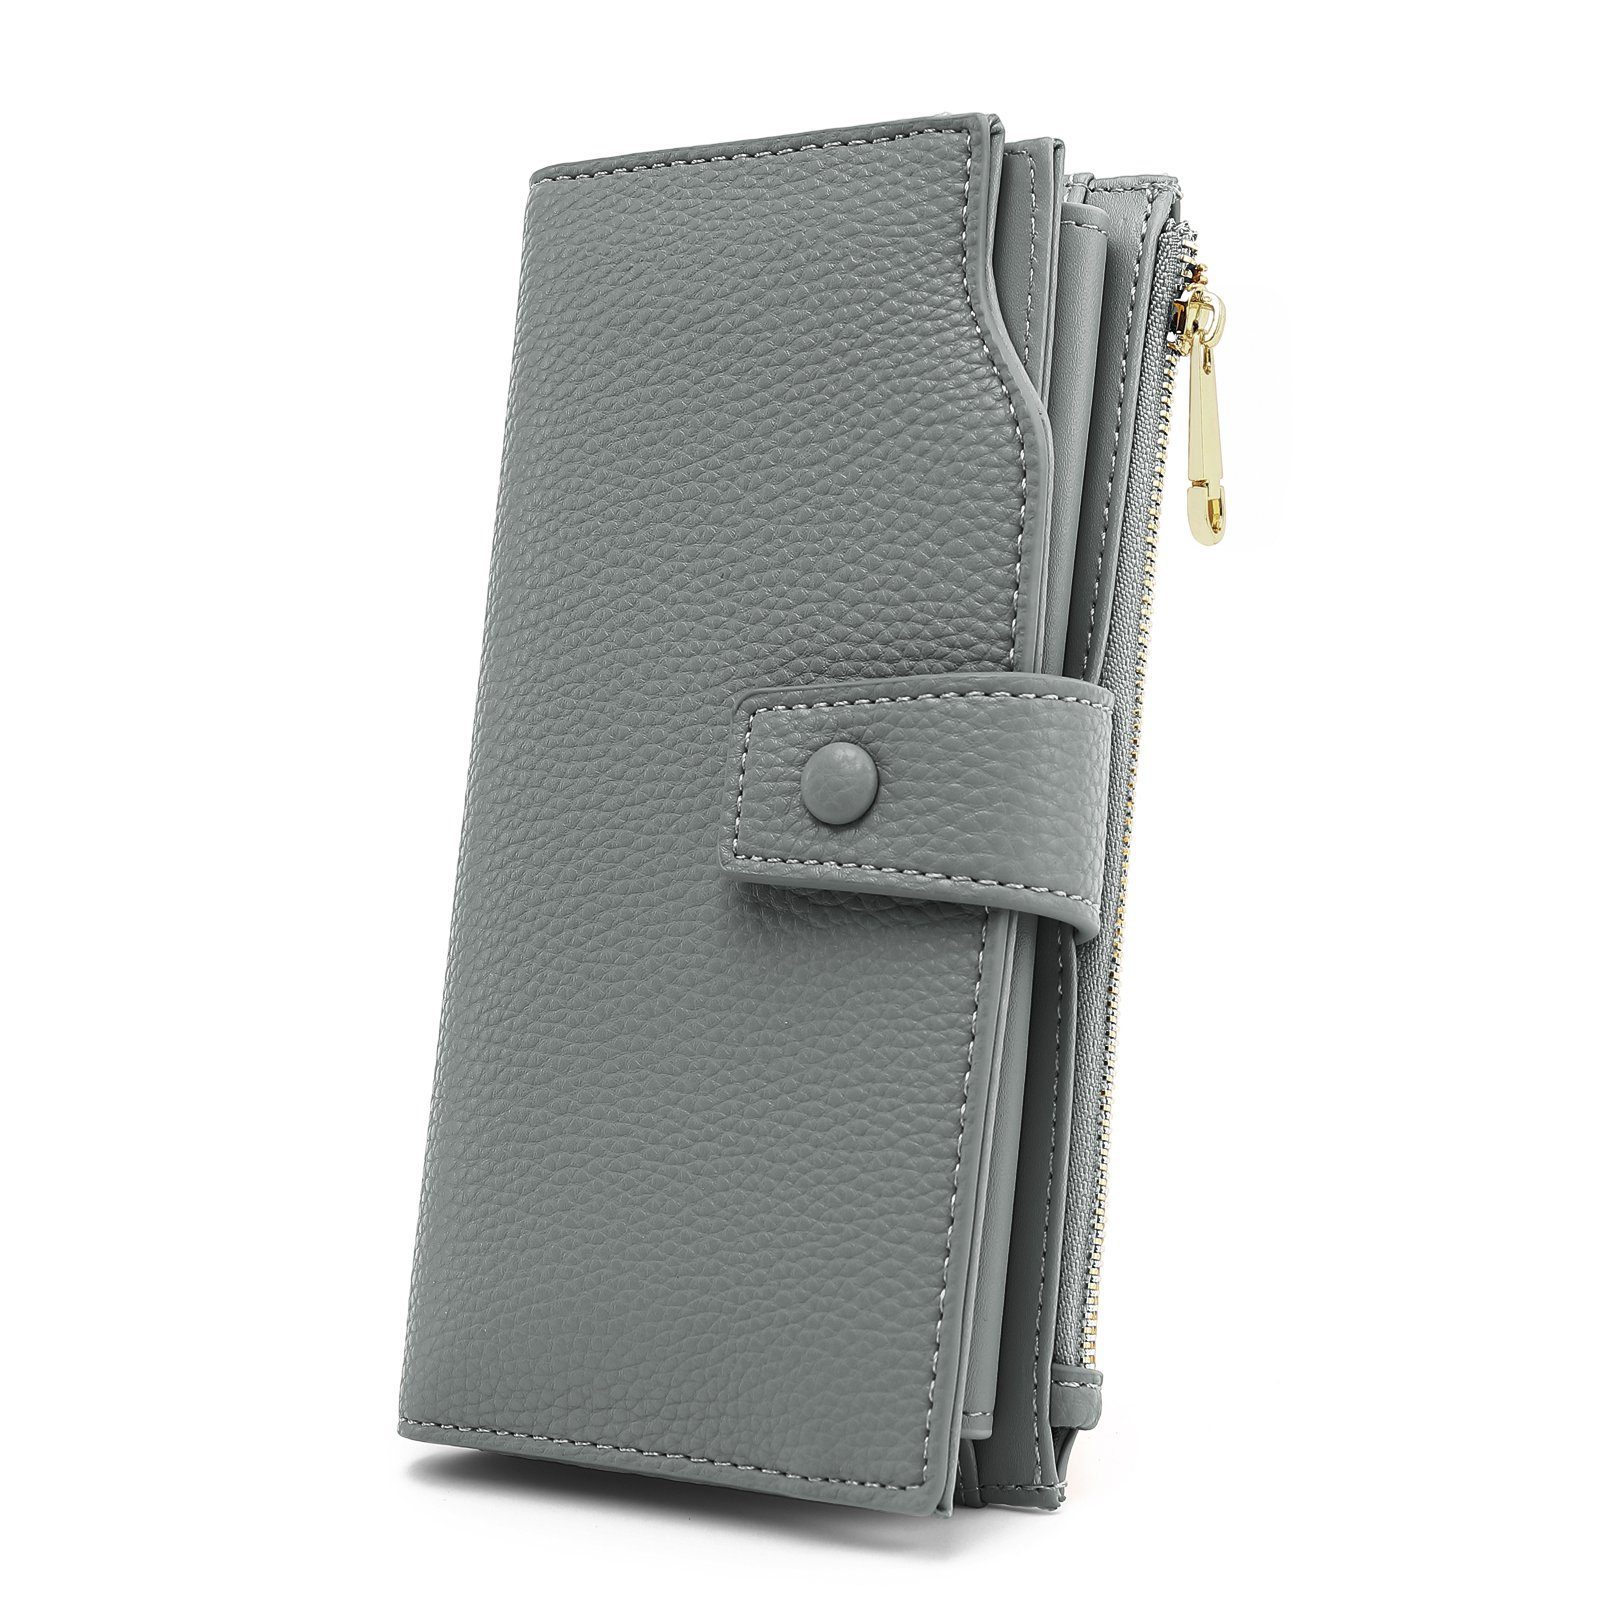 TAN.TOMI Brieftasche Portemonnaie Damen, Geldbörse für Frauen mit Lanyard (Brieftasche), Geldbörse aus hochwertigem Kunstleder Dunkelgrau